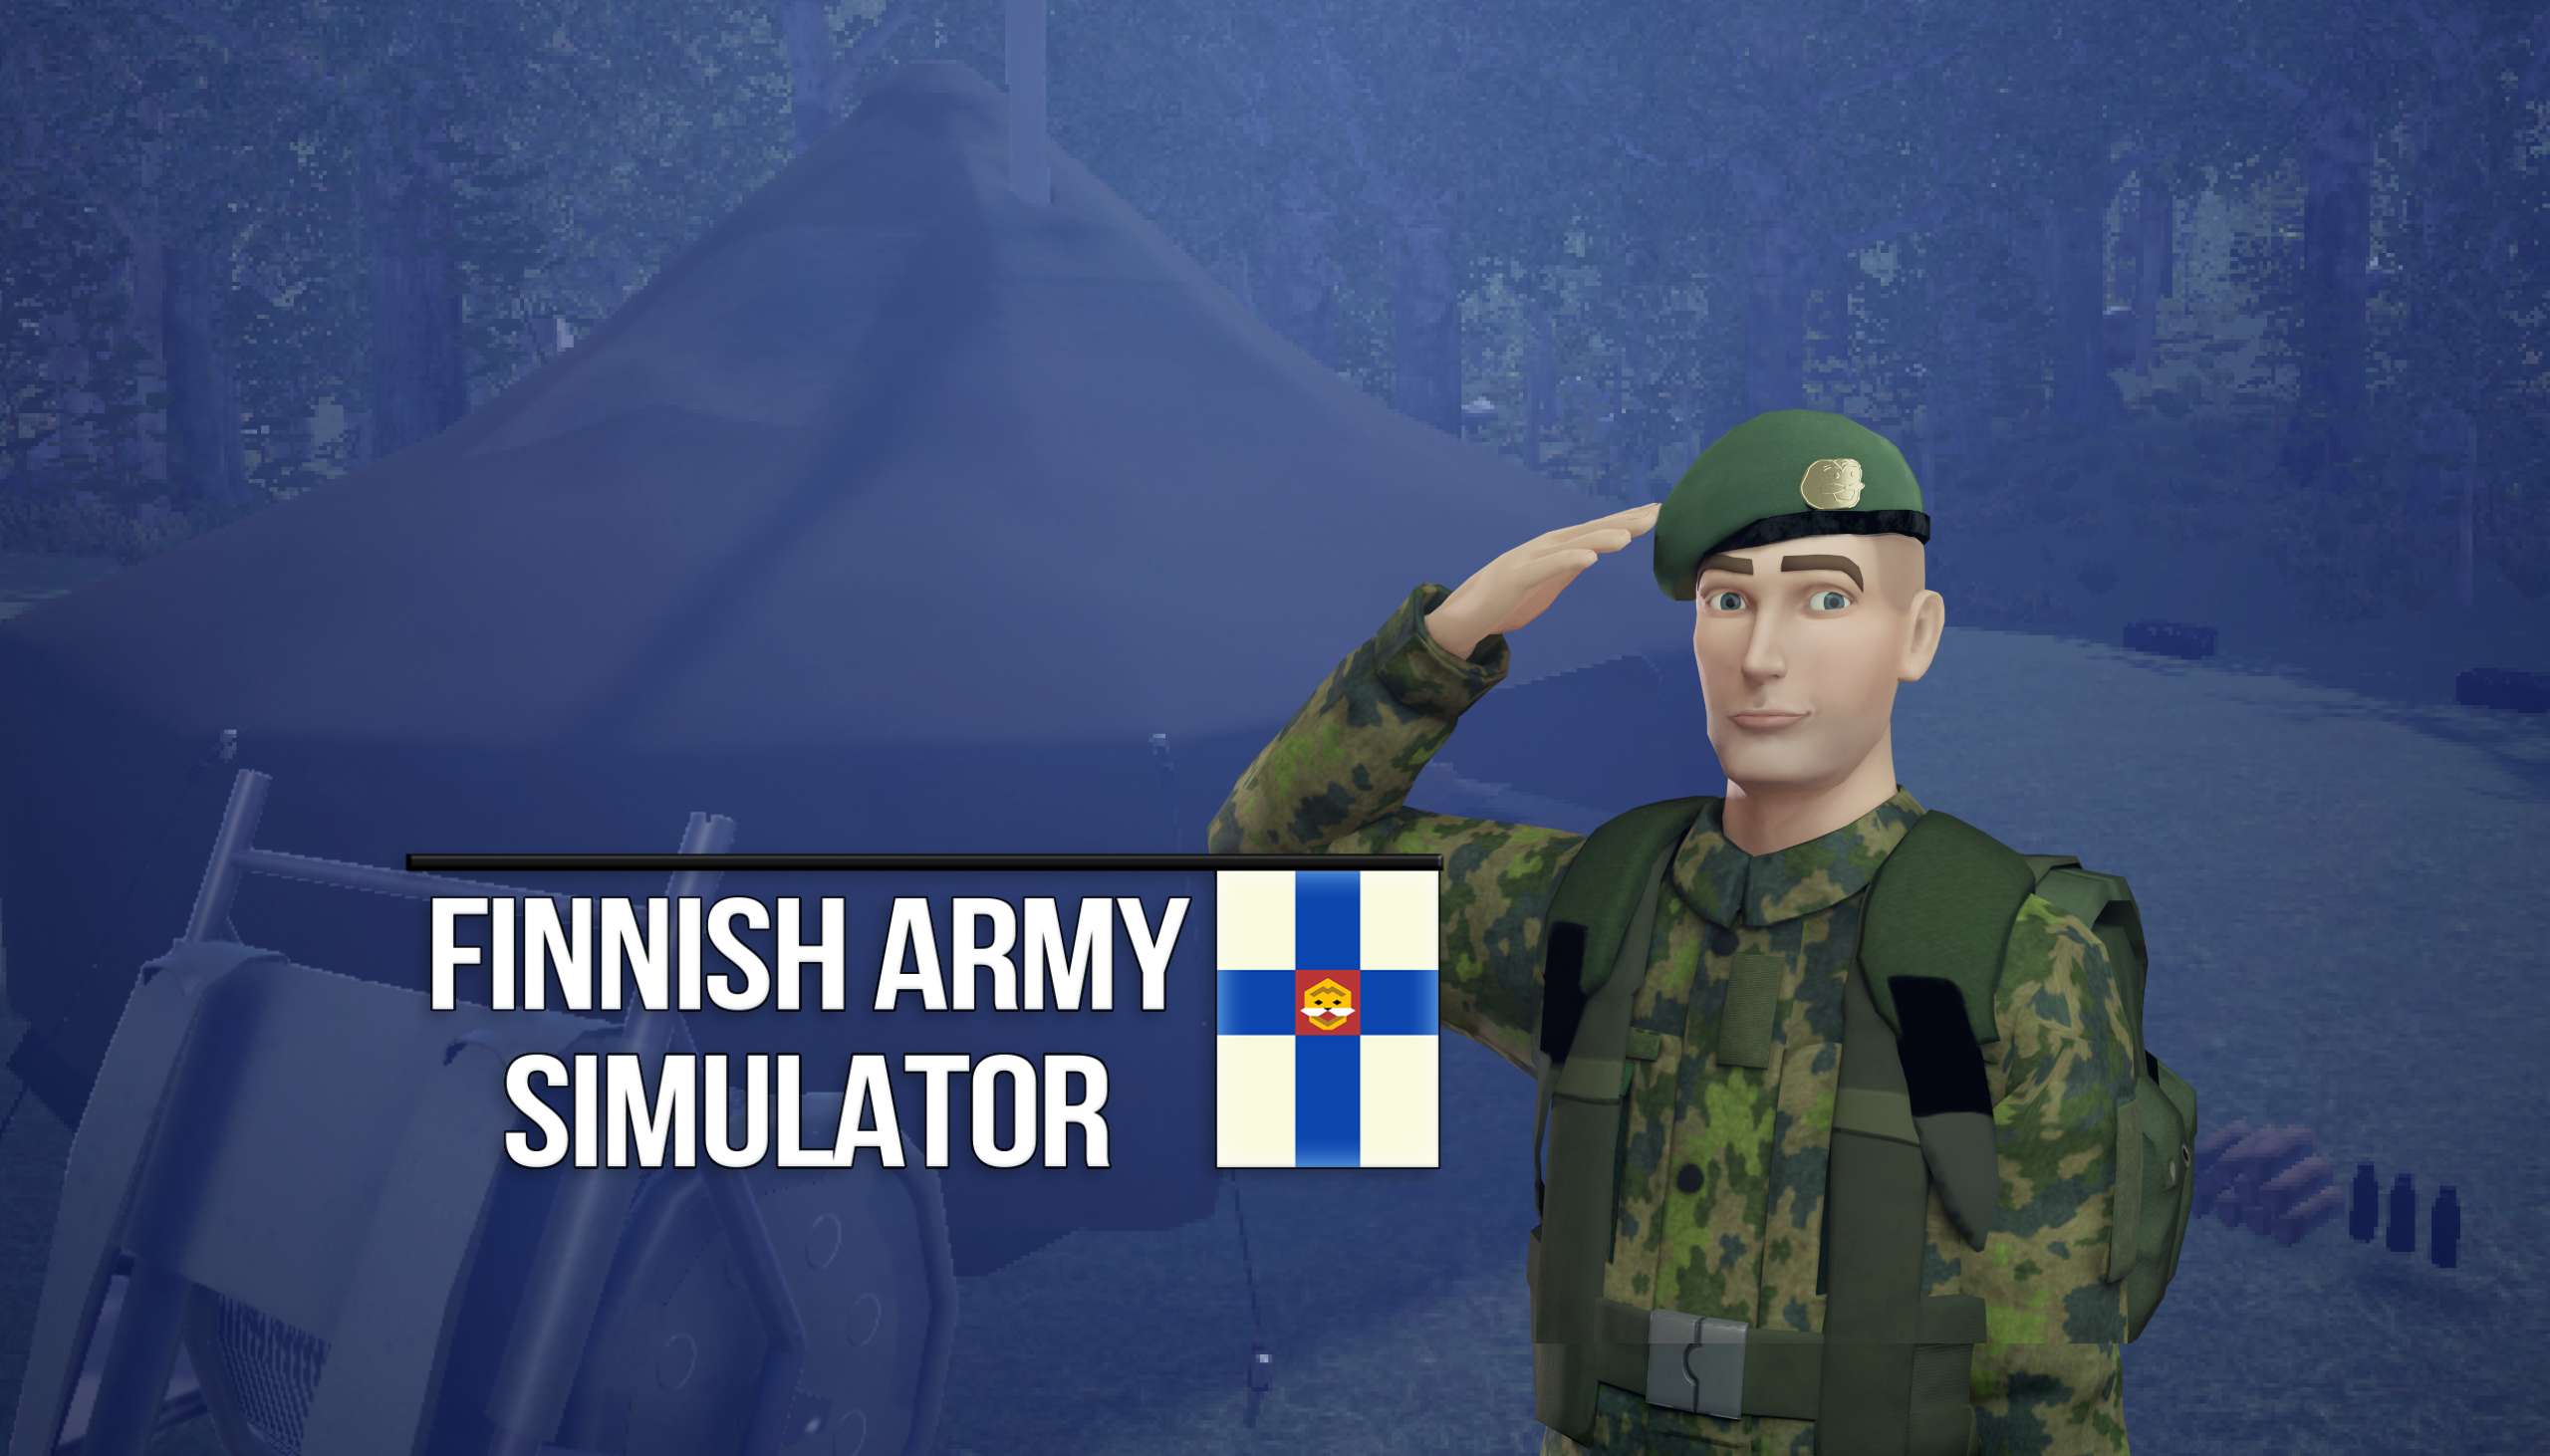 Finnish Army Simulator per PC lanciato oggi